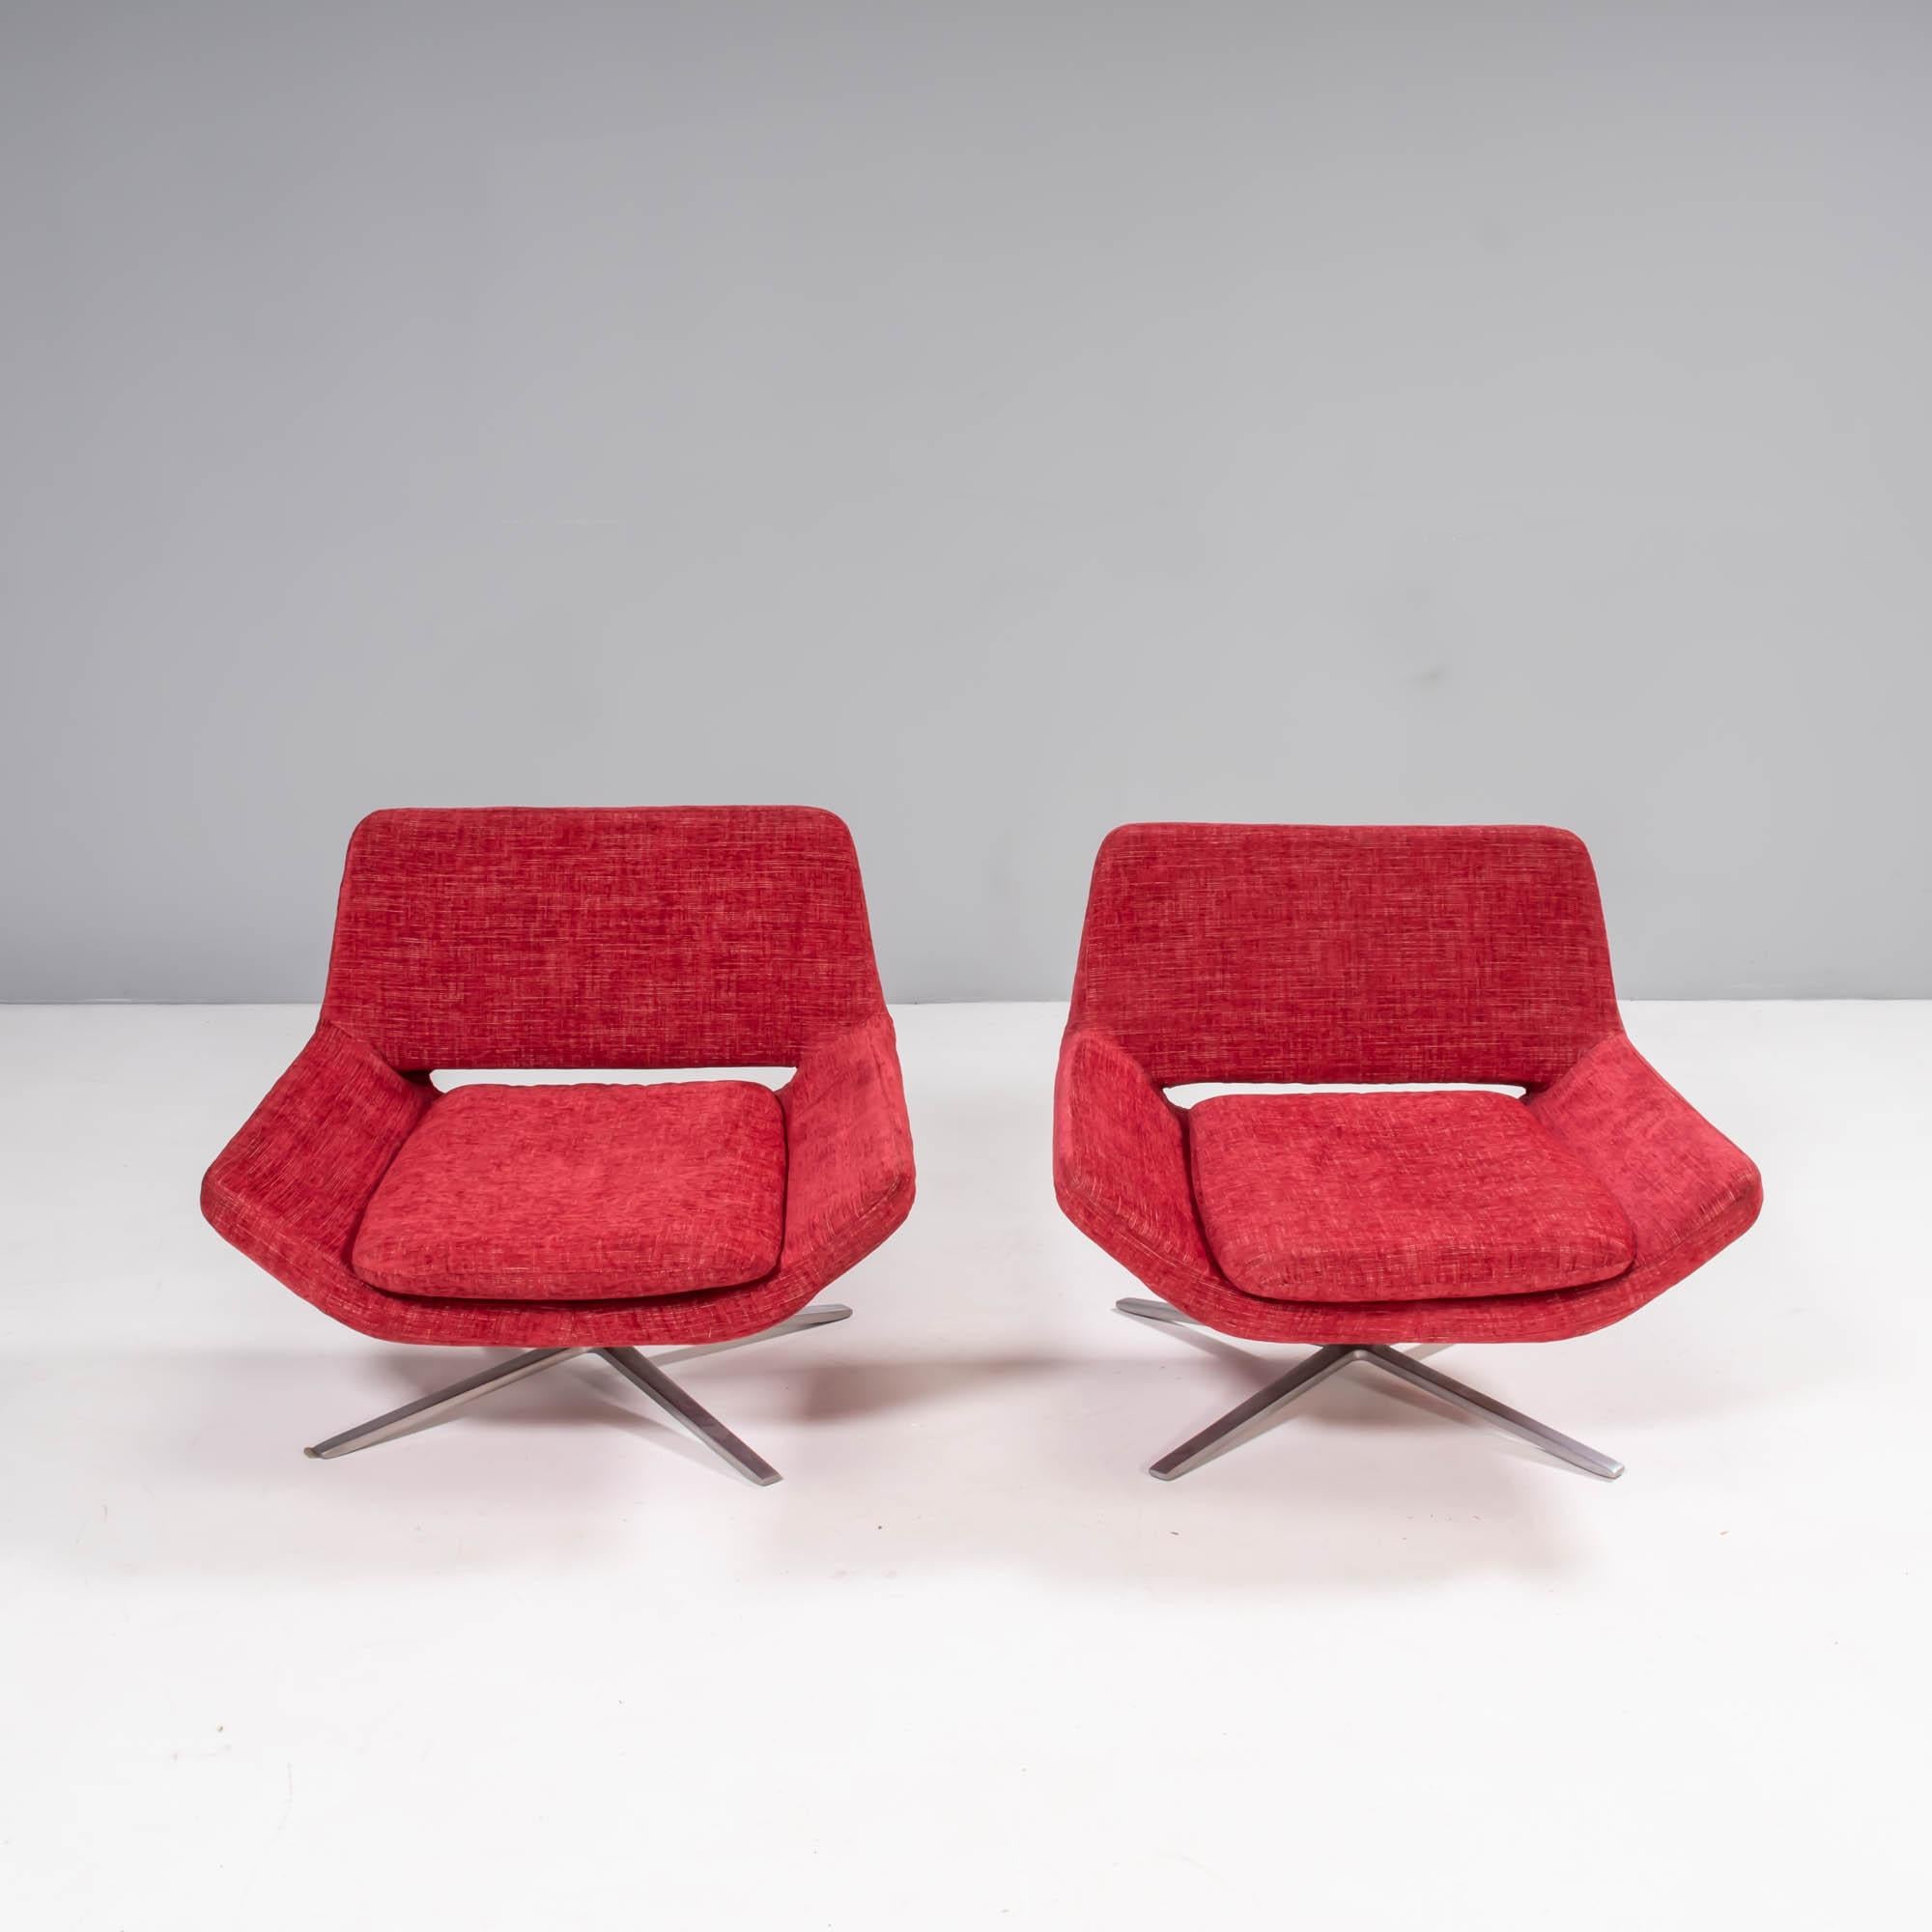 Conçue à l'origine en 2002 par Jeffrey Bernett pour B&B Italia, cette paire de fauteuils Metropolitan présente une esthétique épurée et moderniste. 

Rembourrés dans leur tissu tweed rouge d'origine, les fauteuils présentent des sièges qui se